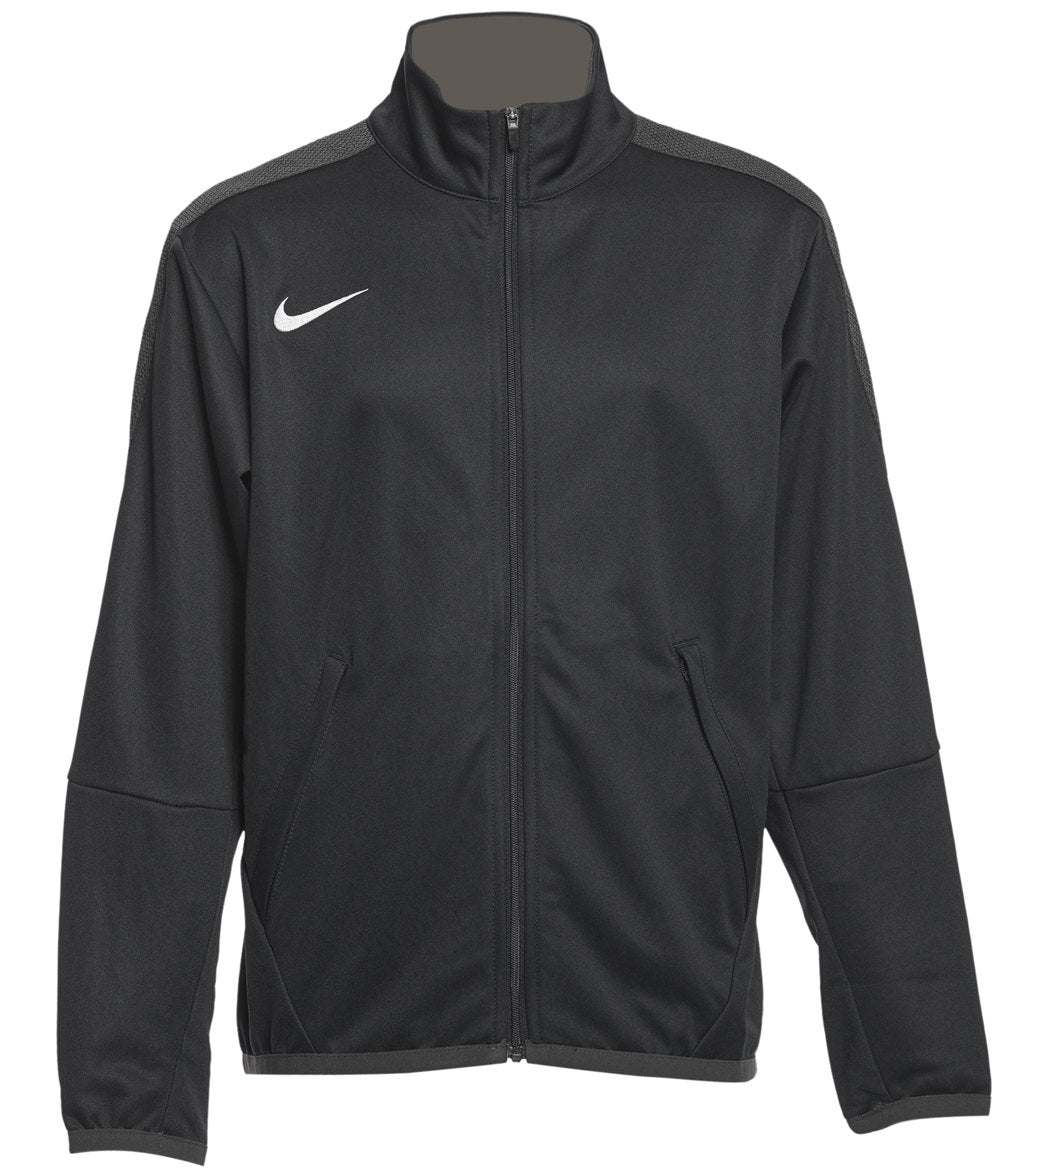 Nike Youth Women's Training Jacket - Black Large Size Large Polyester - Swimoutlet.com